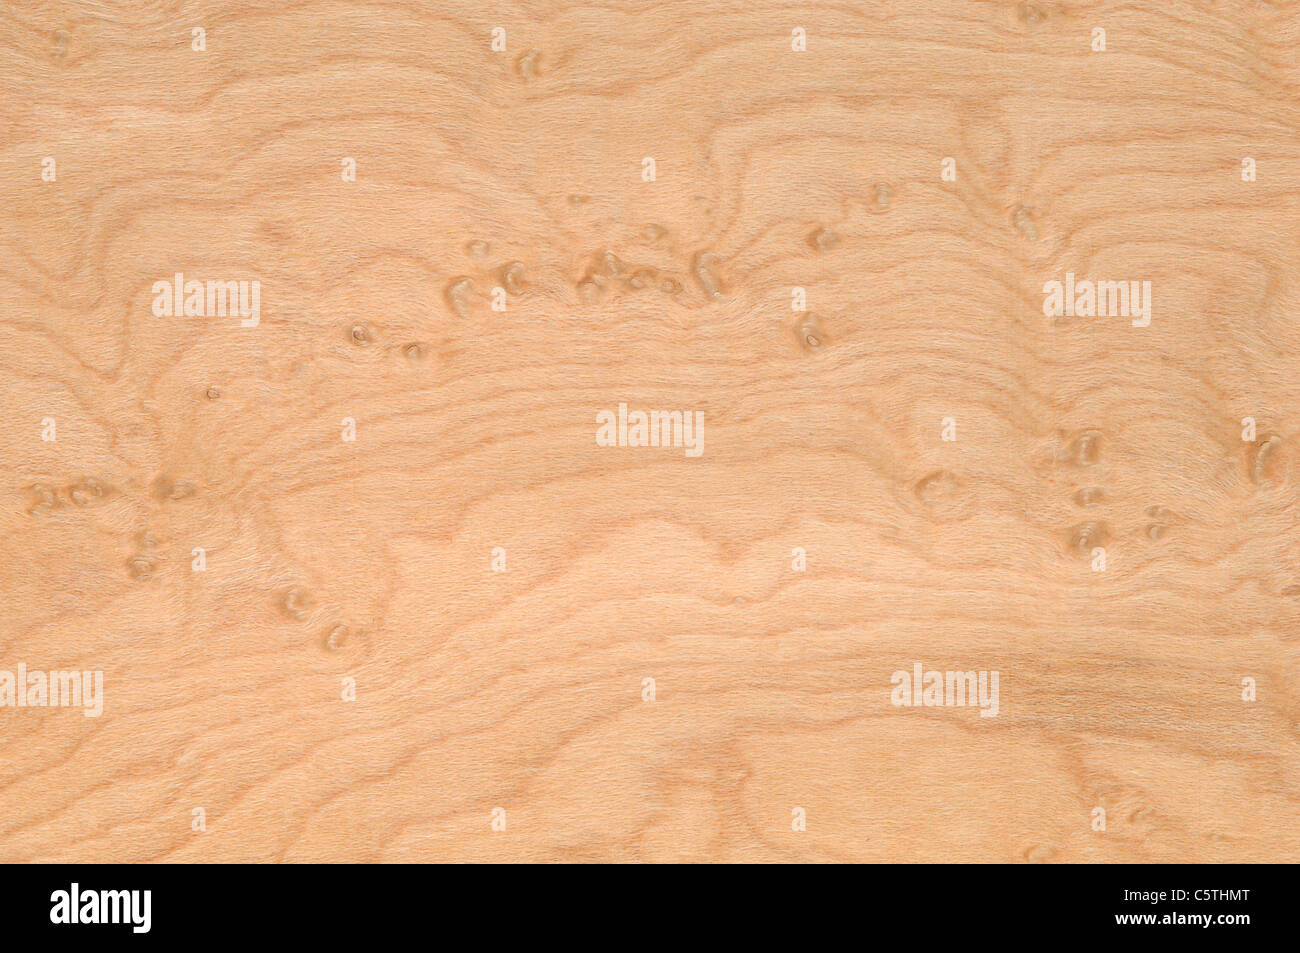 La surface de bois, bois d'érable Birdseye (Acer saccharum) full frame Banque D'Images